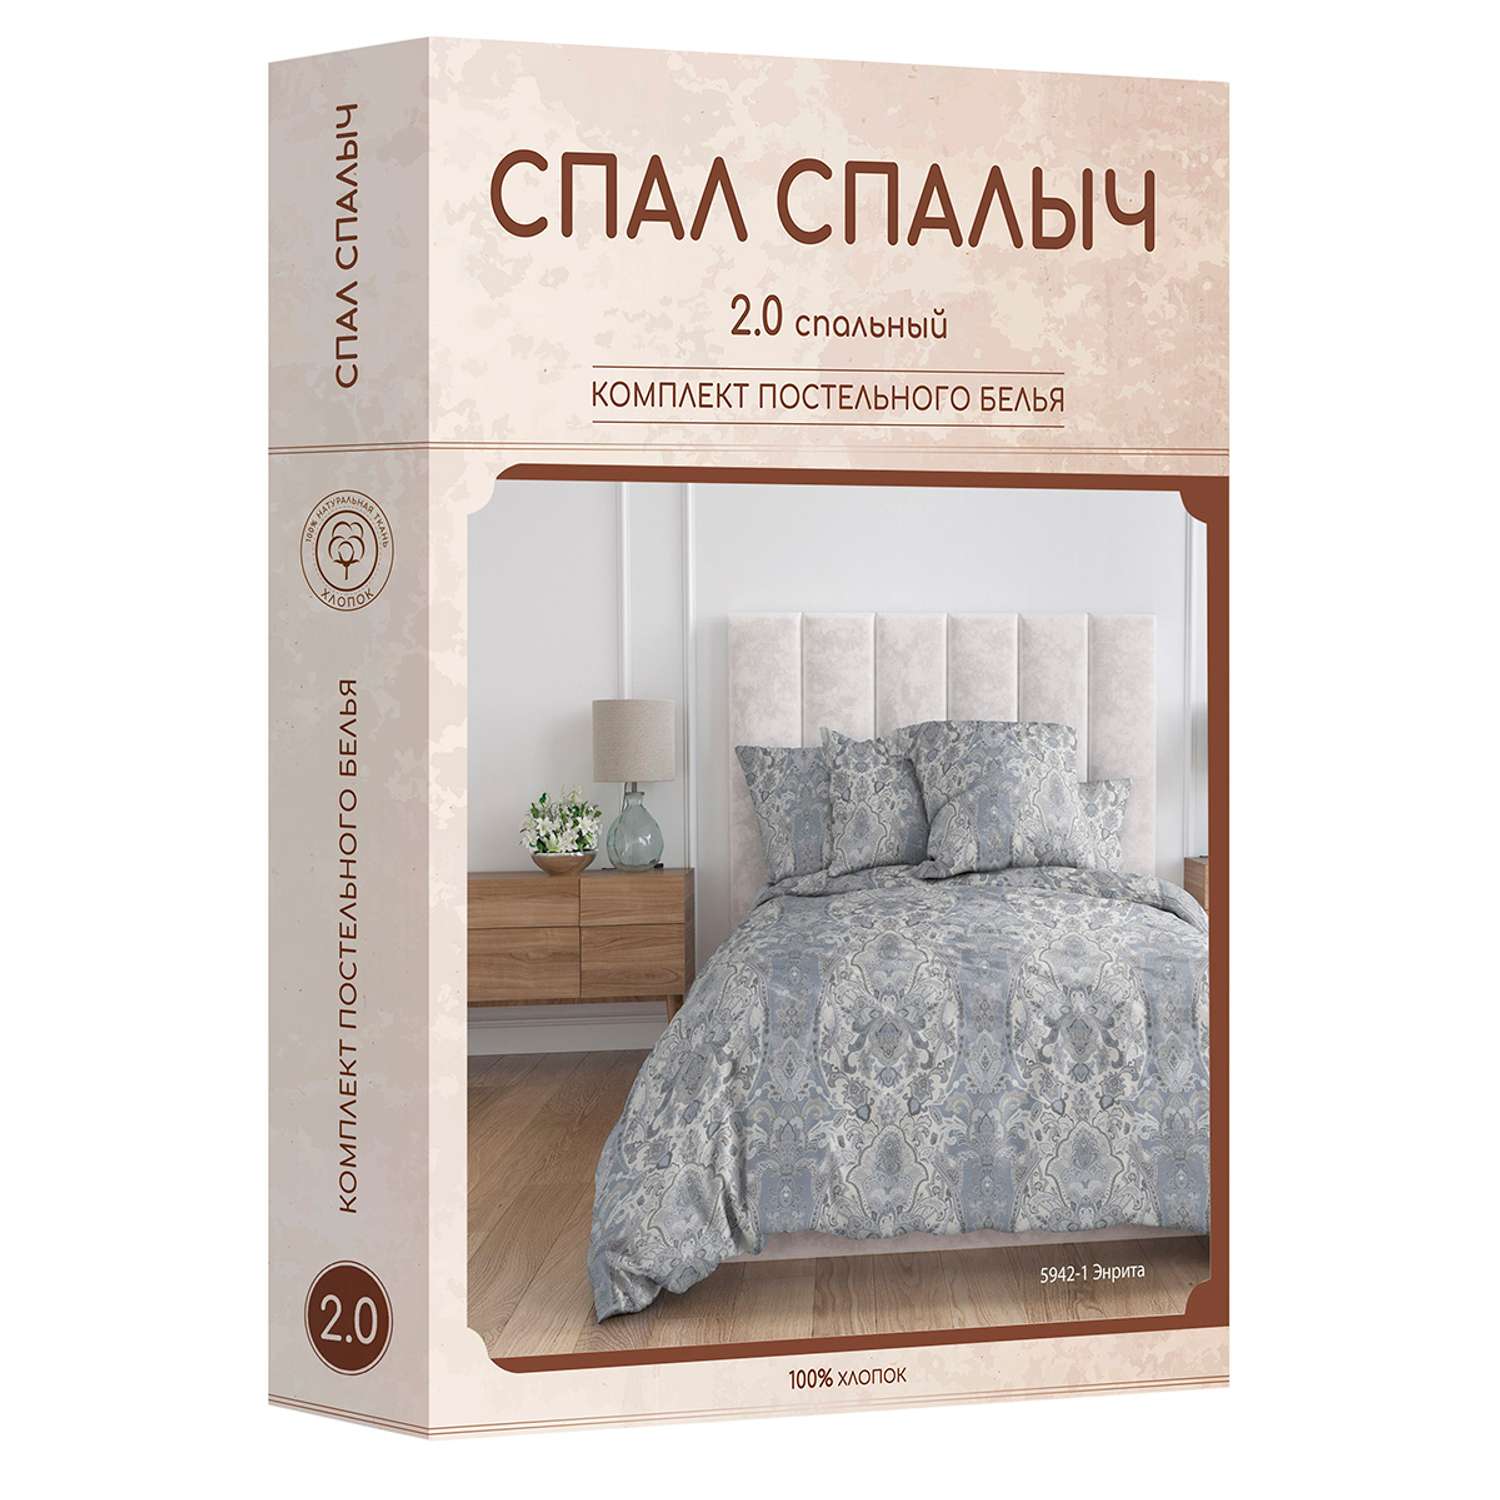 Комплект постельного белья Спал Спалыч Энрита 2-спальный макси рис.5942-1 - фото 12